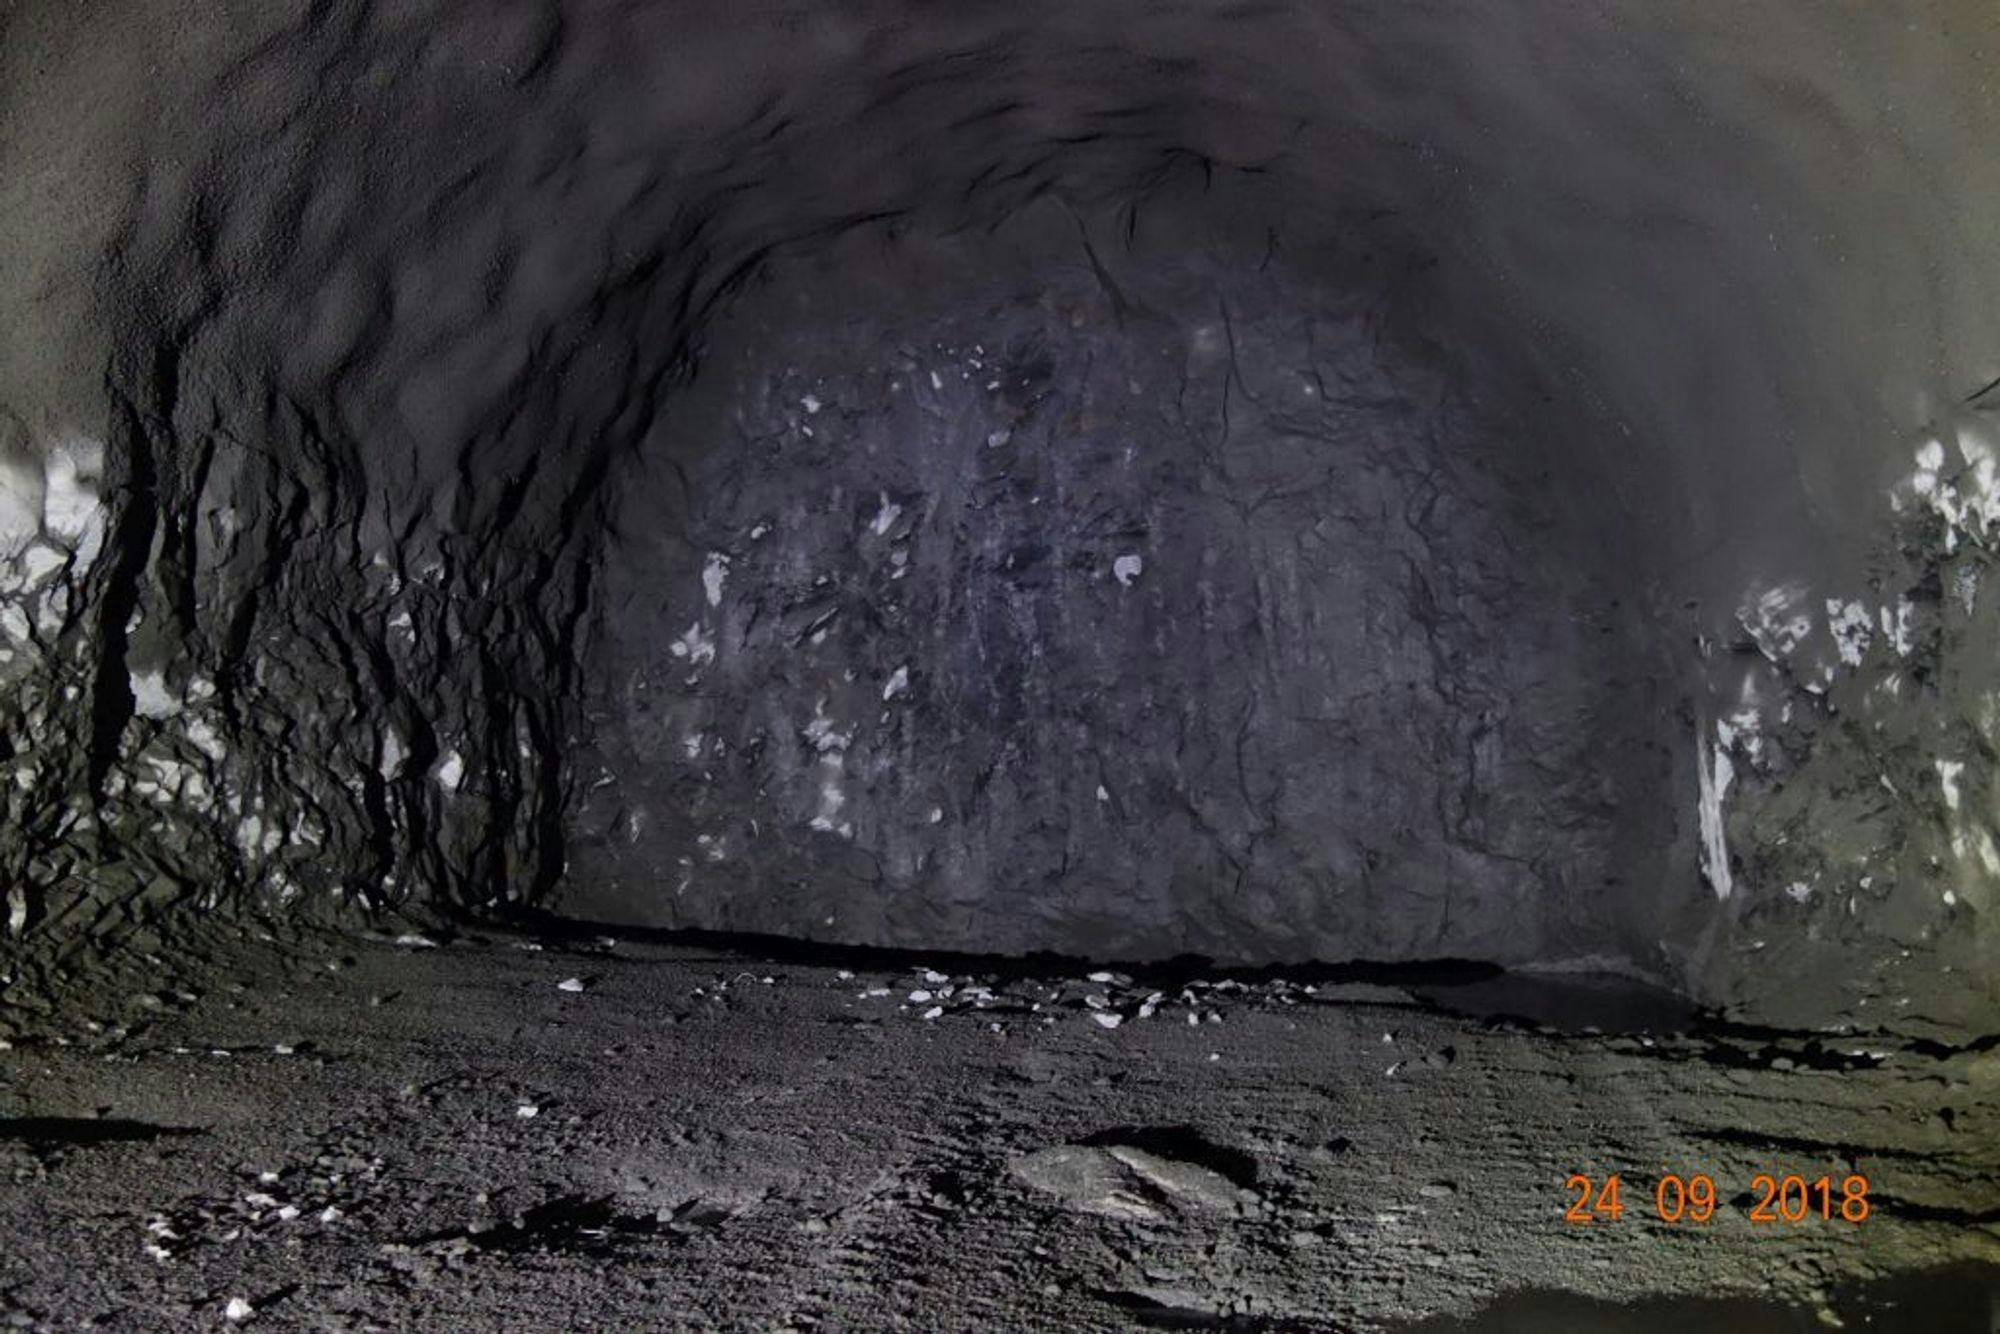 A dark tunnel or cave interior